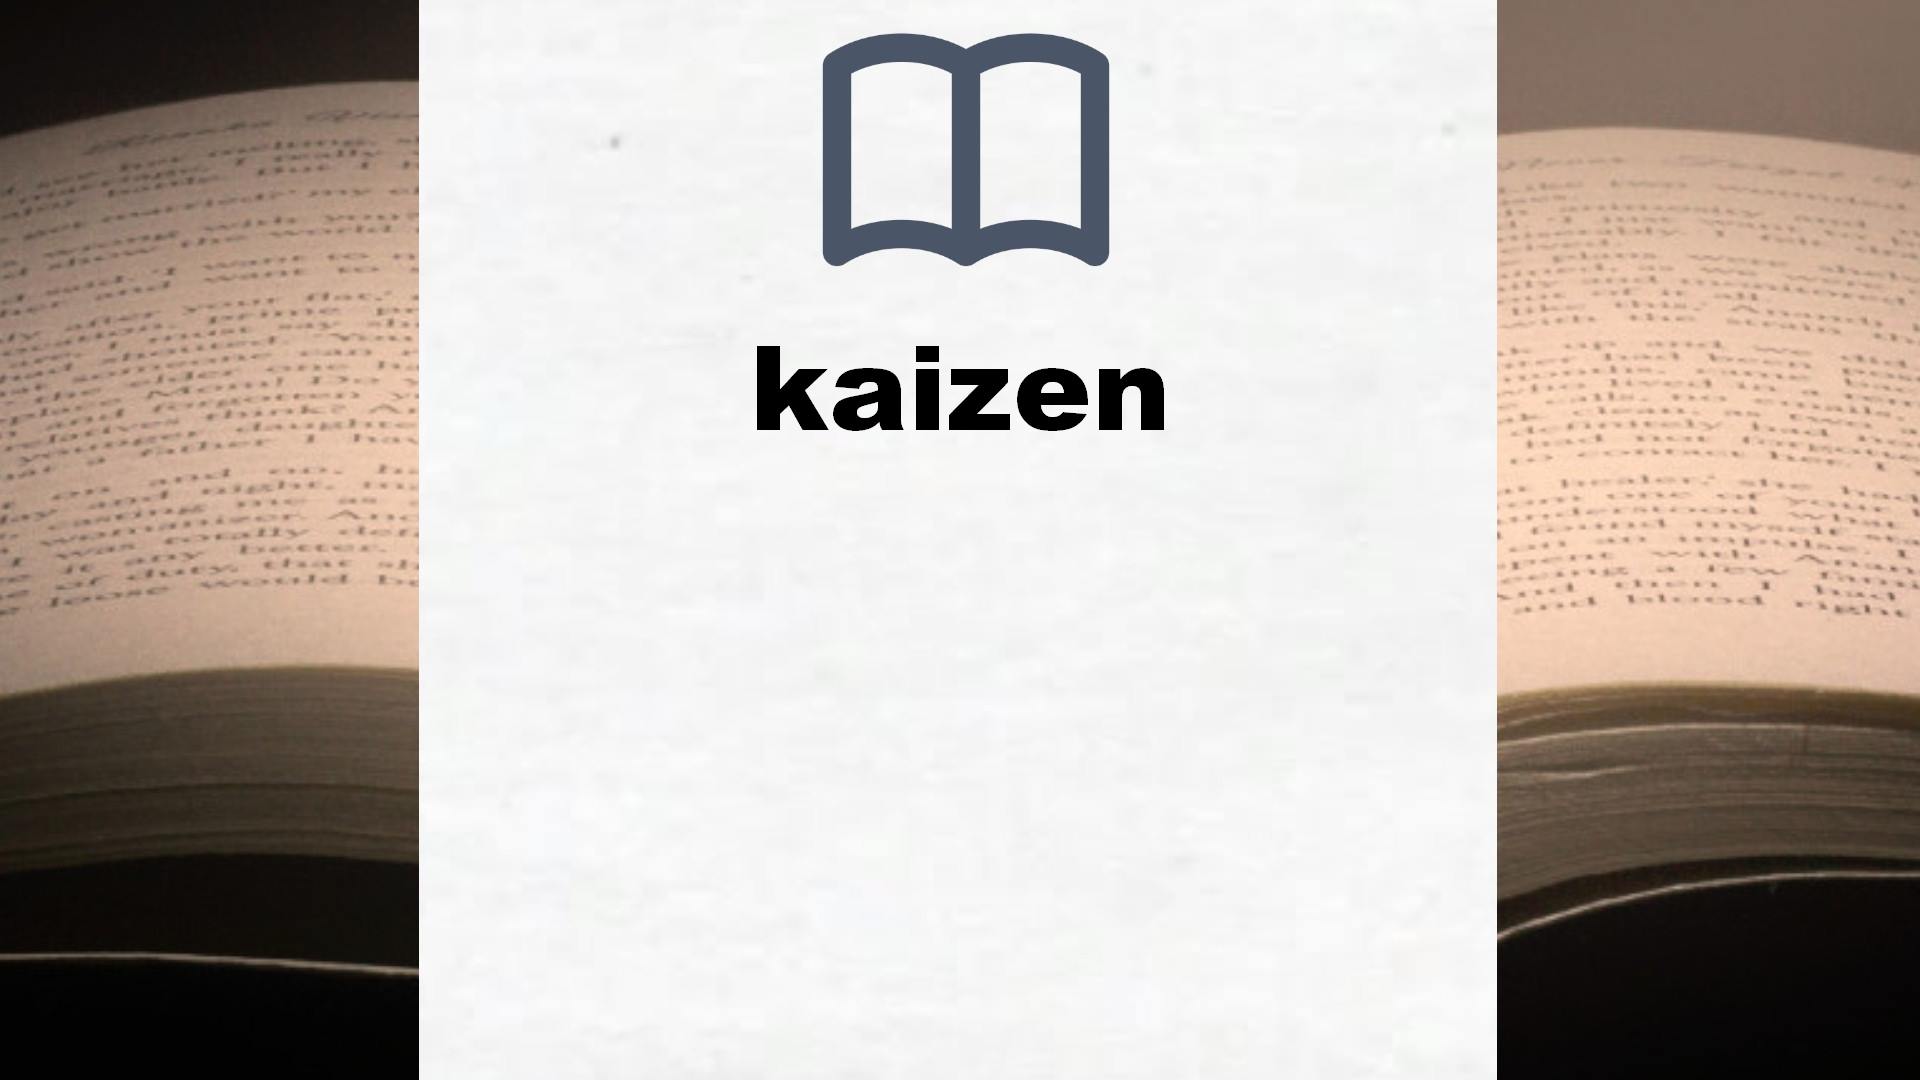 Libros sobre kaizen